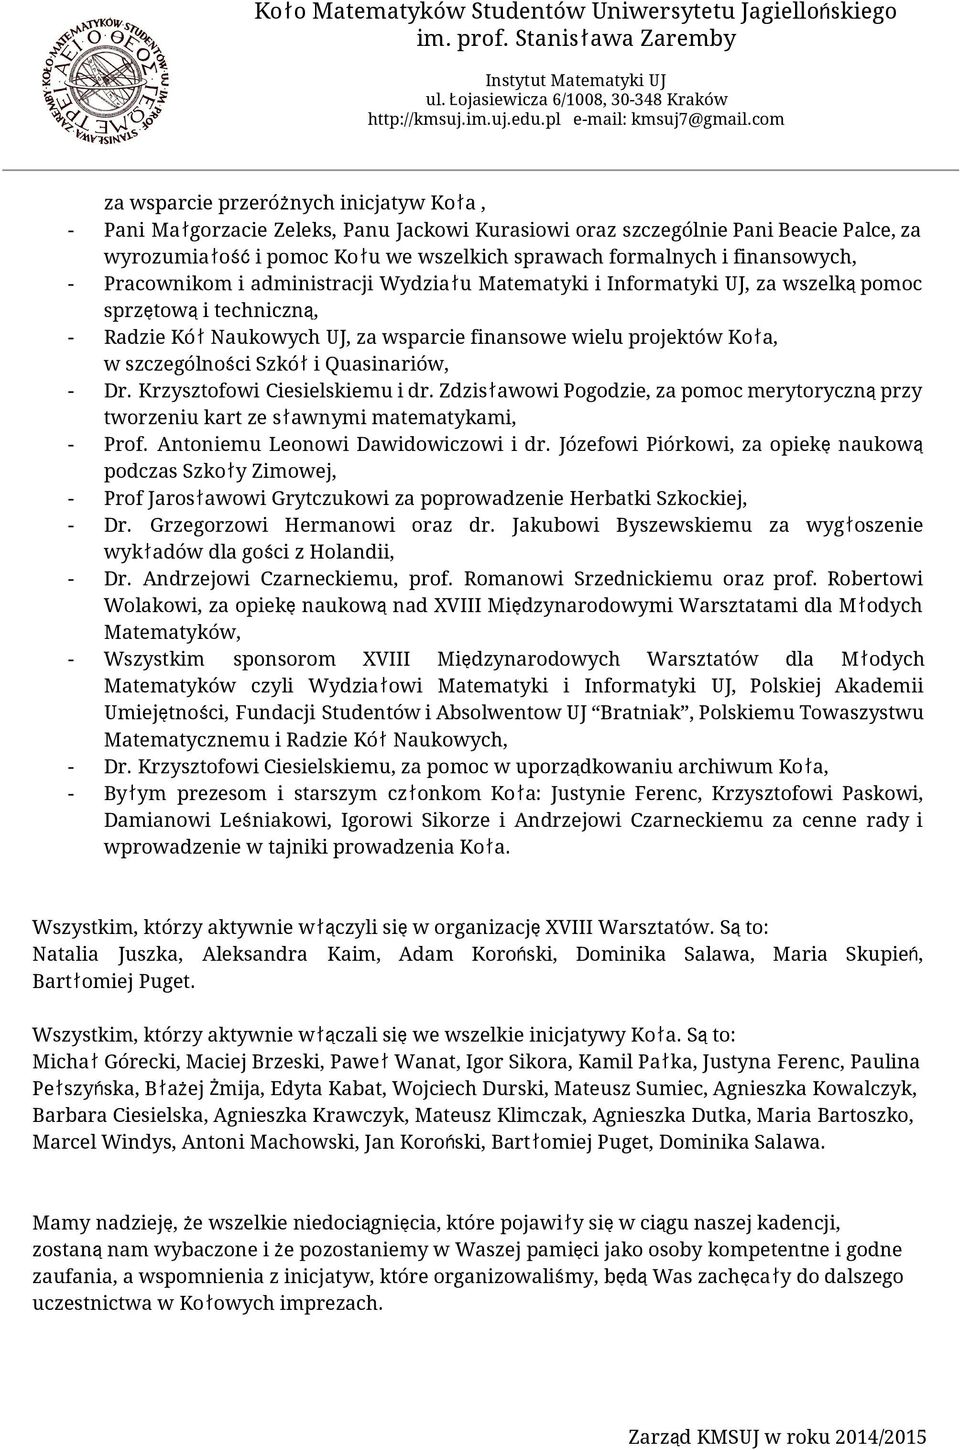 szczególności Szkółi Quasinariów, - Dr. Krzysztofowi Ciesielskiemu i dr. Zdzisławowi Pogodzie, za pomoc merytorycznąprzy tworzeniu kart ze sławnymi matematykami, - Prof.